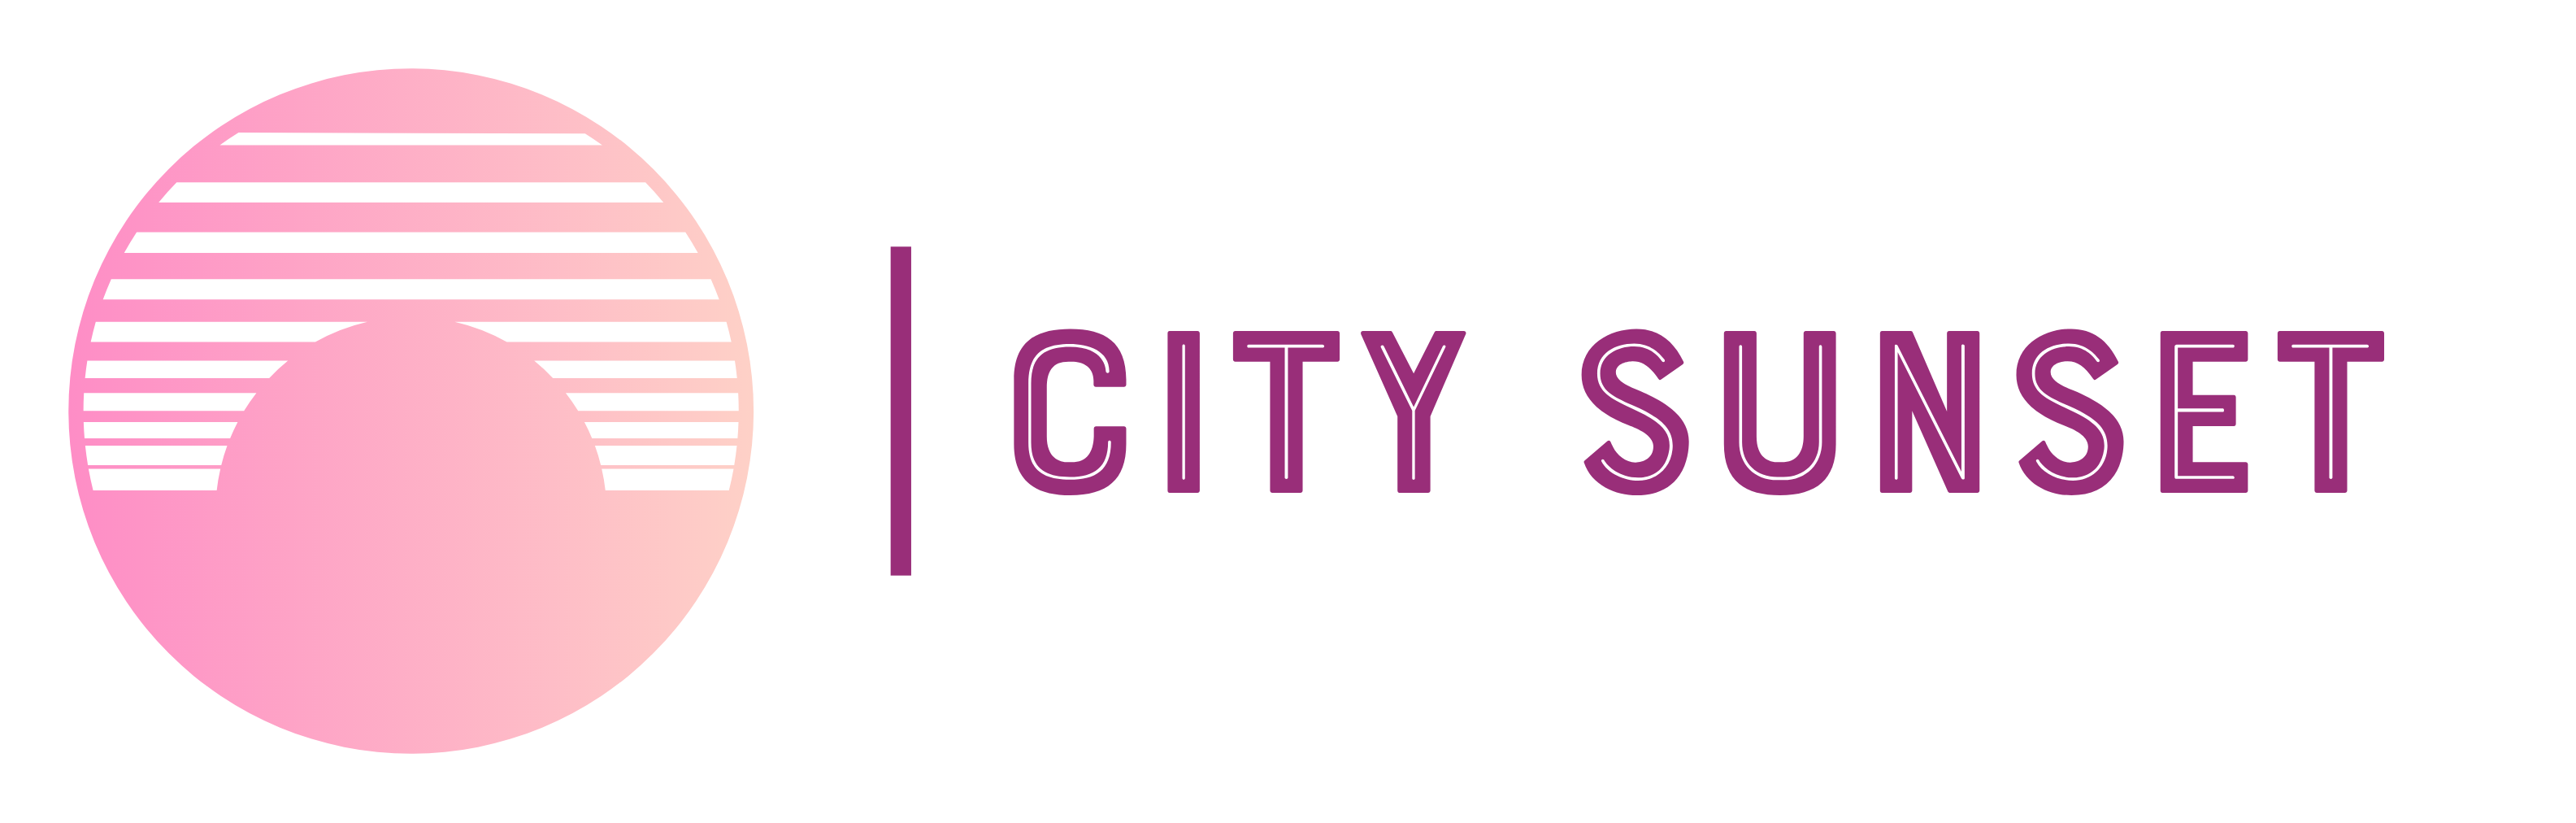 citysun-set.com